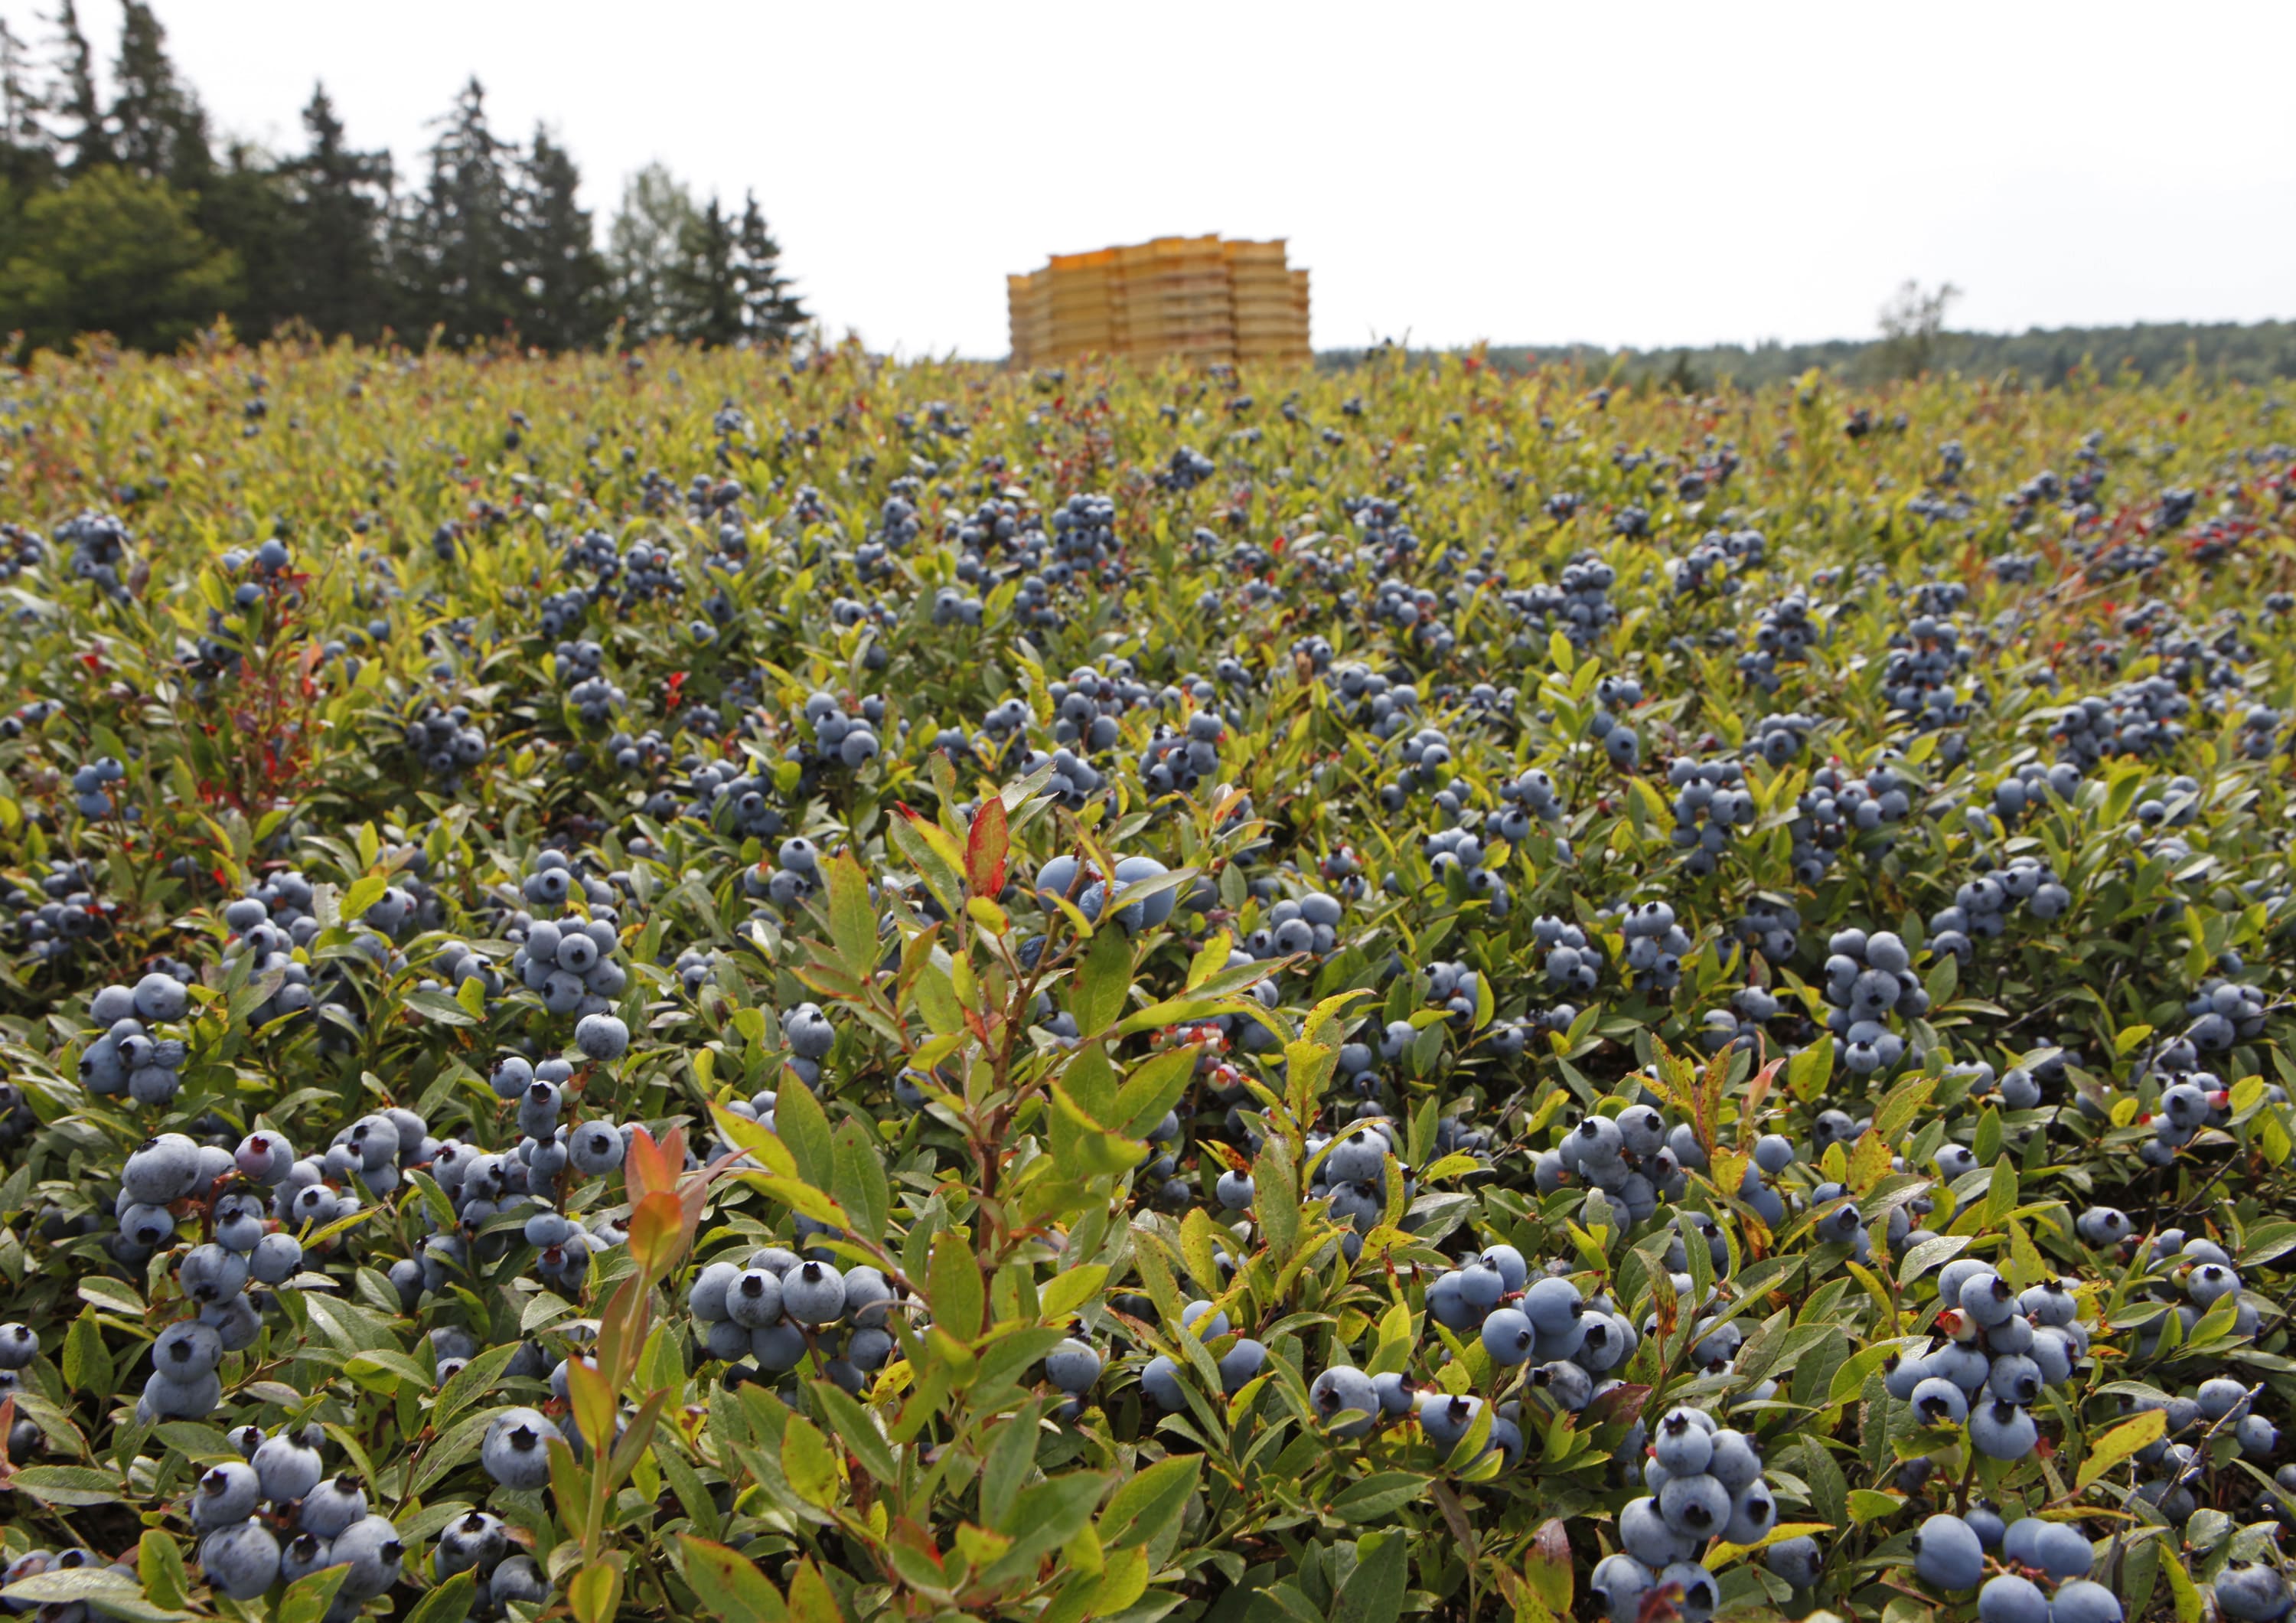 Blueberry field